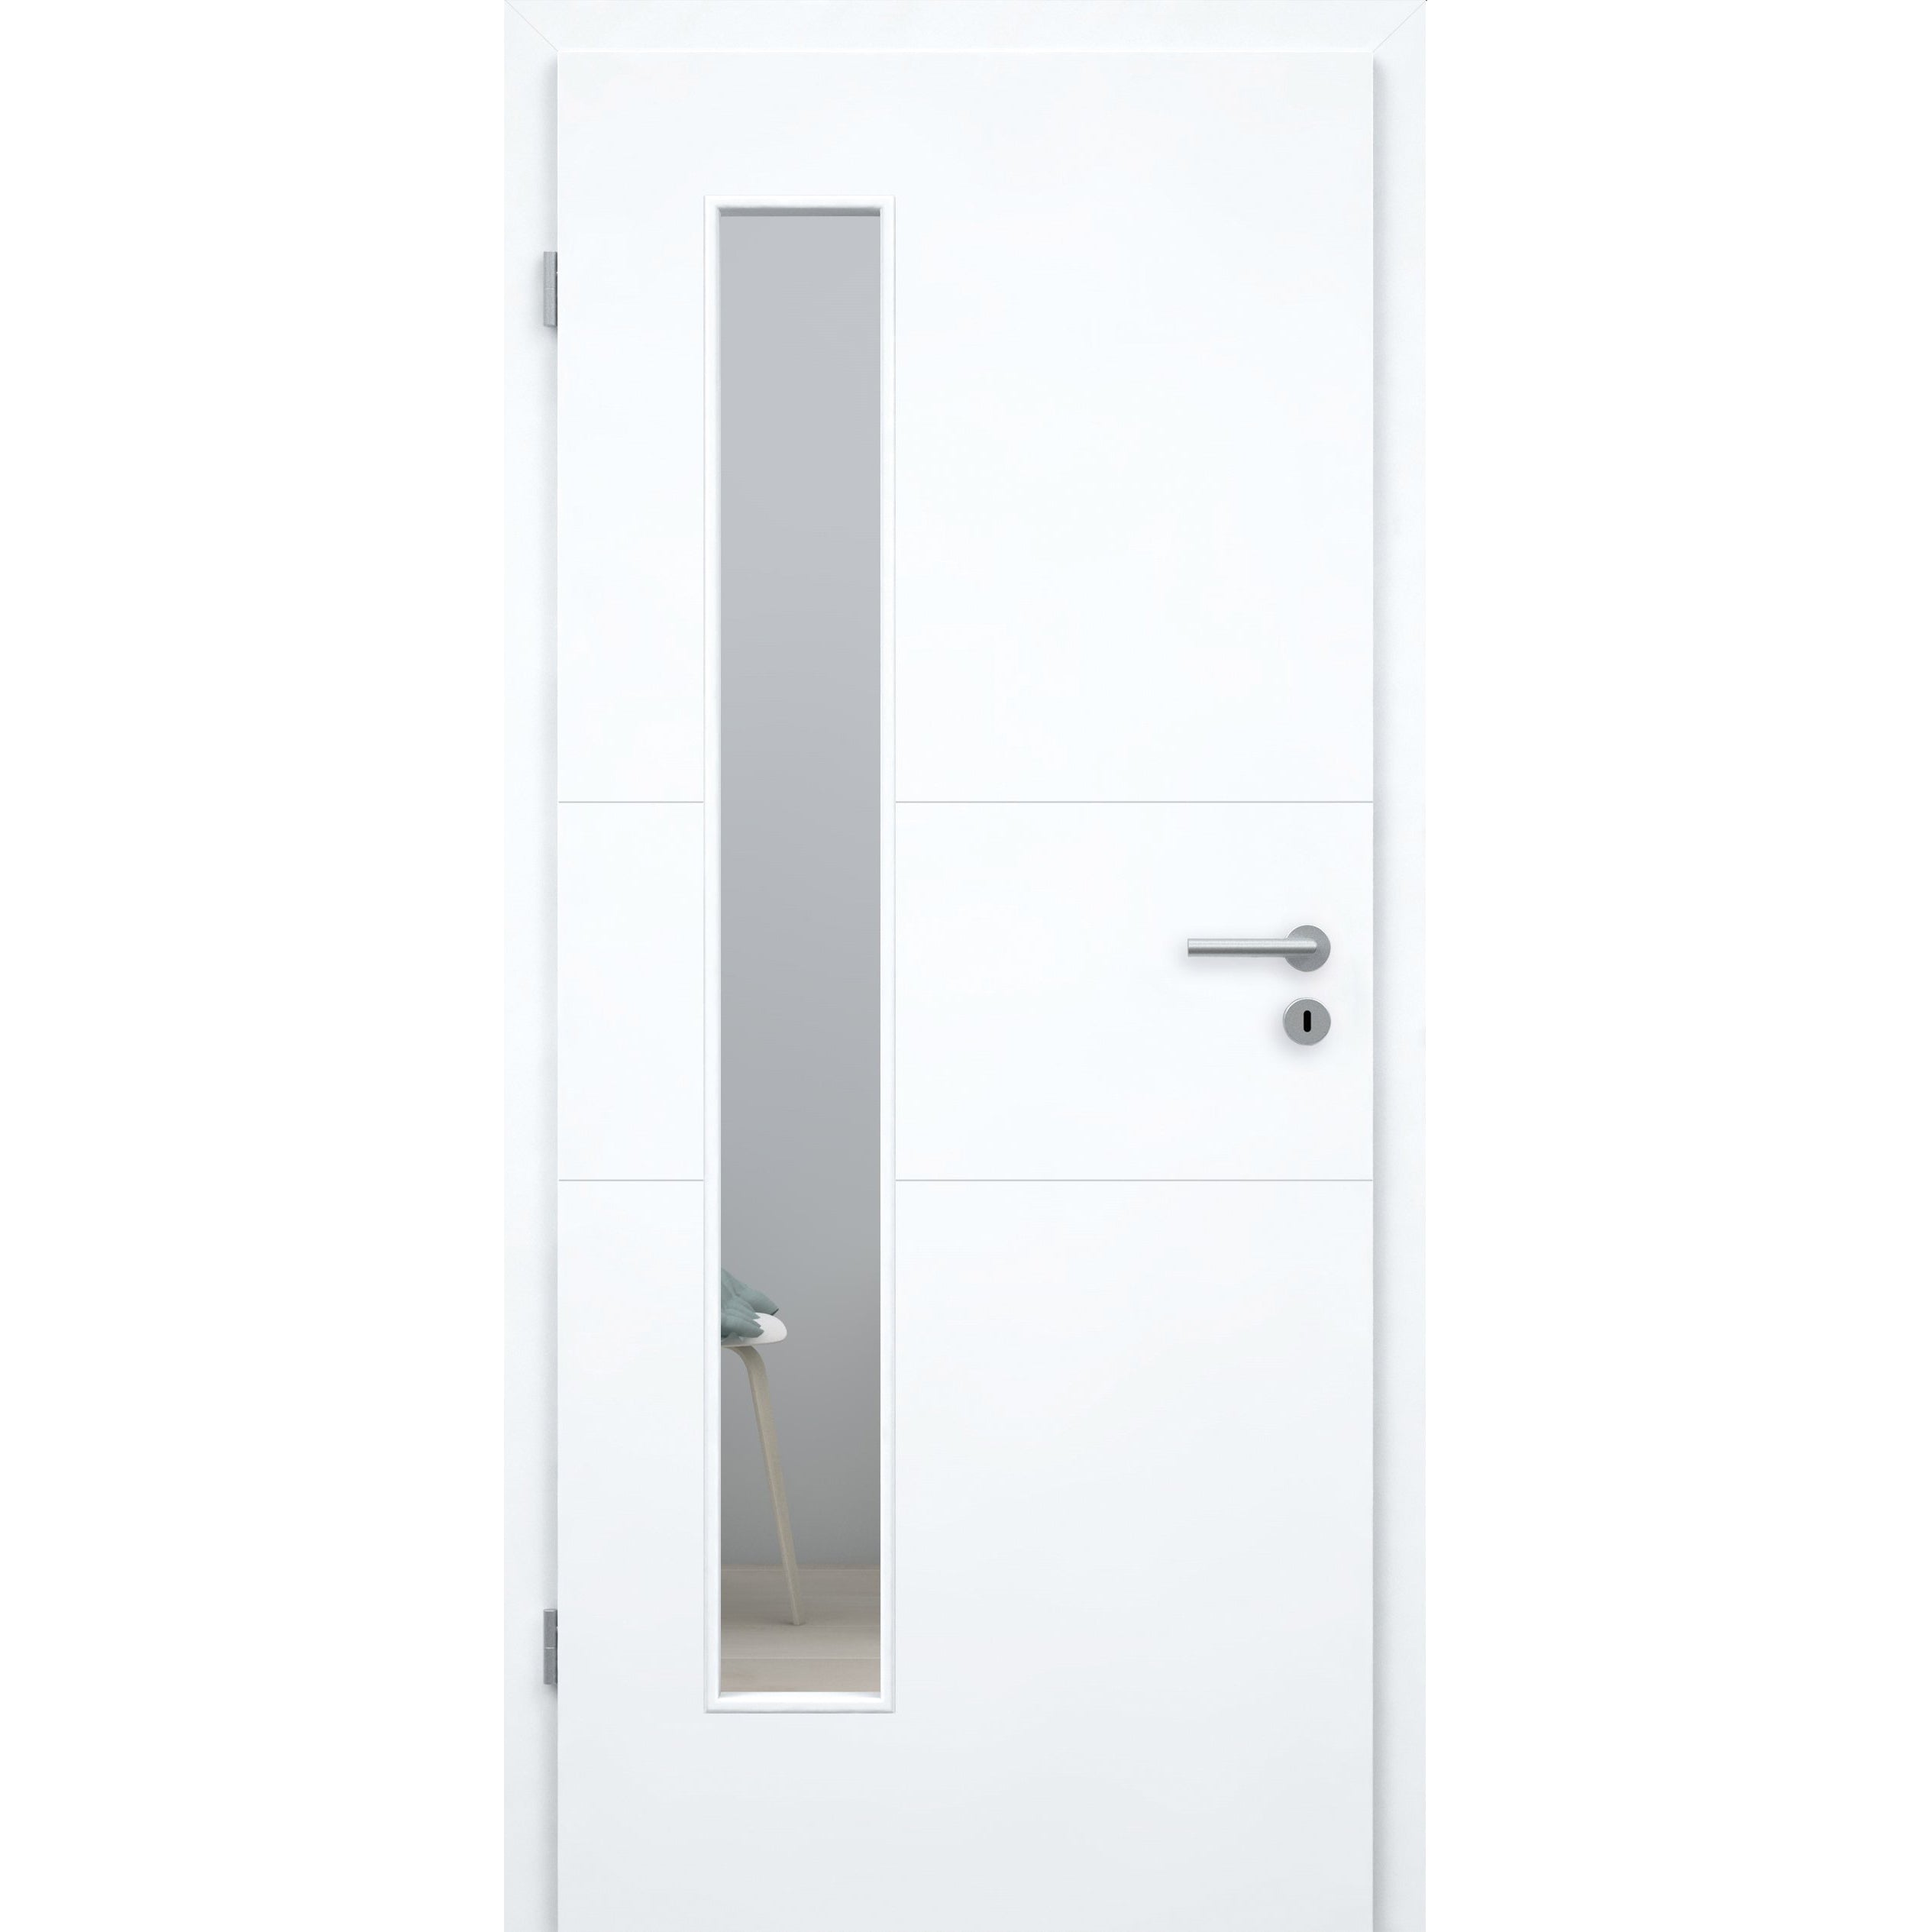 Zimmertür mit Lichtausschnitt brillant-weiß 2 Rillen quer Designkante - Modell Designtür Q23LAB